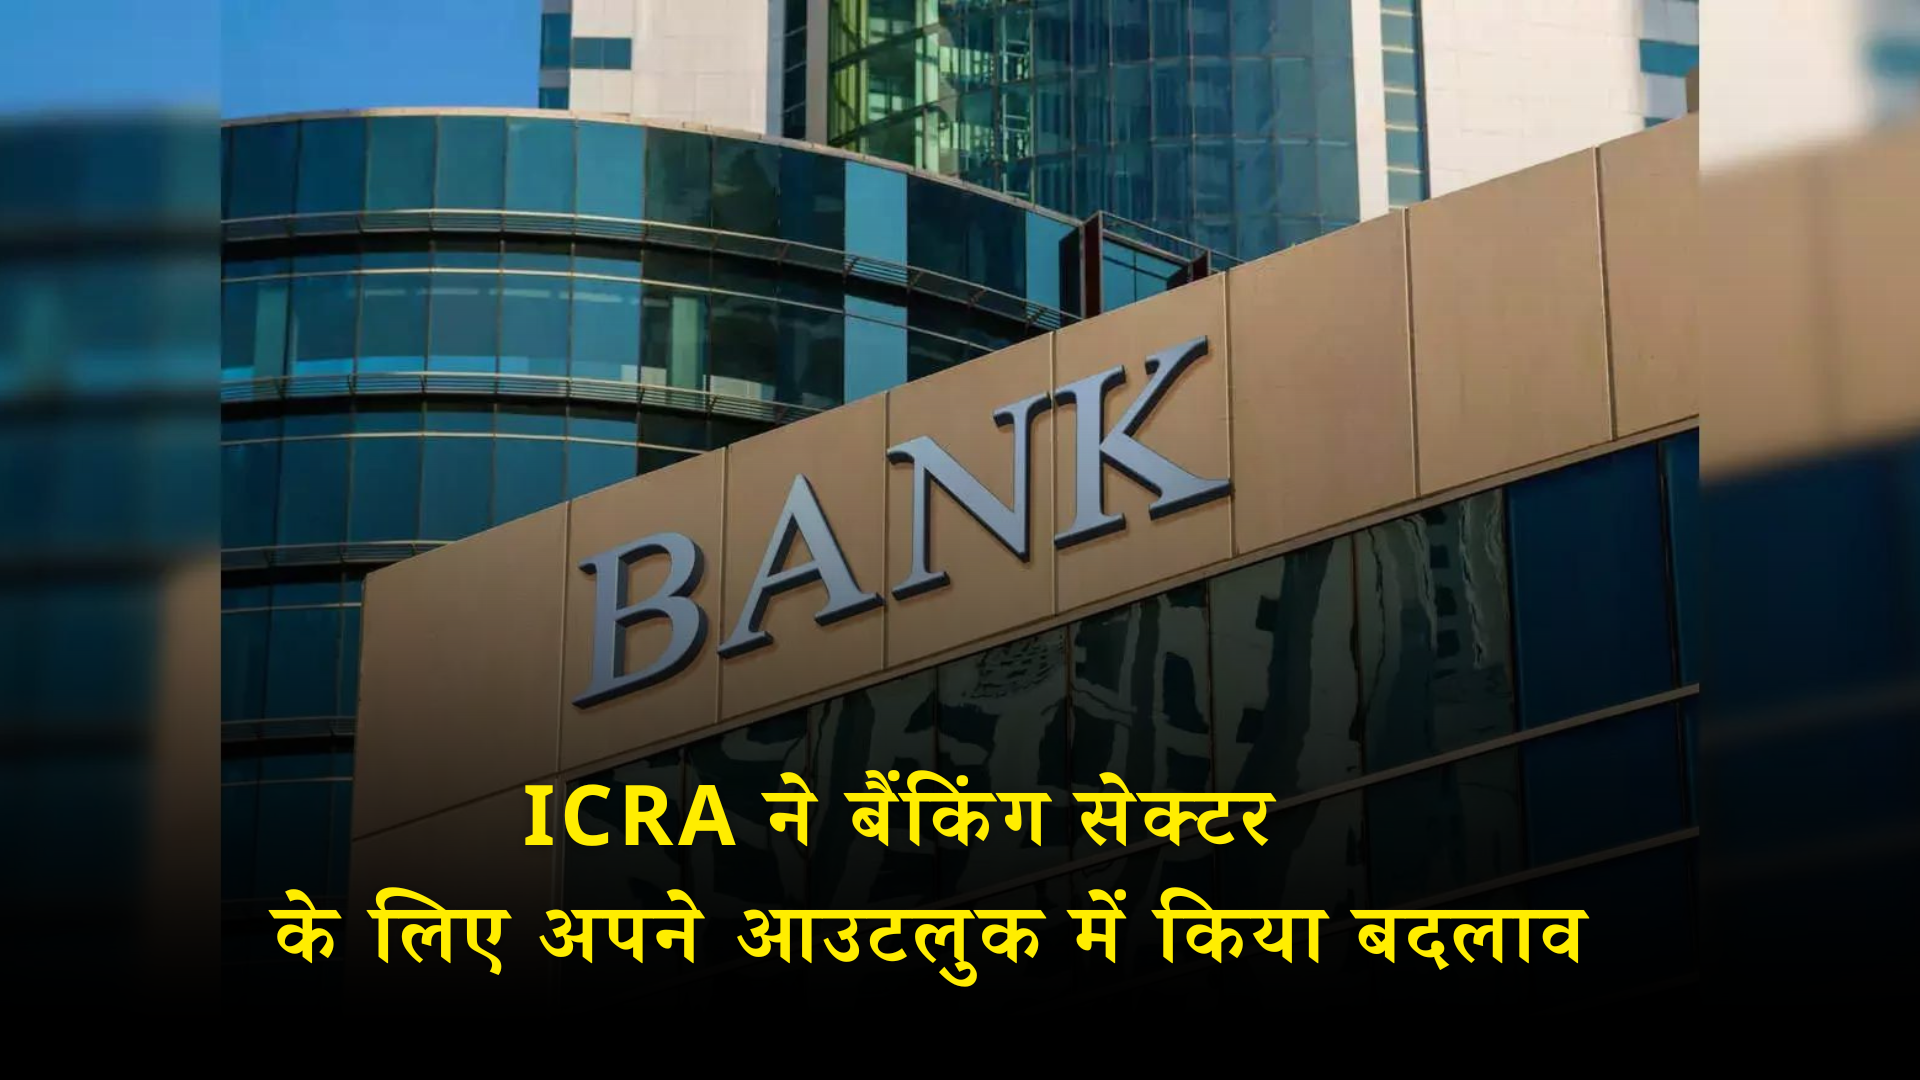 ICRA ने बैंकिंग सेक्टर के लिए अपने आउटलुक में किया बदलाव, कहा- वित्त वर्ष 2025 में पड़ेगा मुनाफे और लोन पर असर